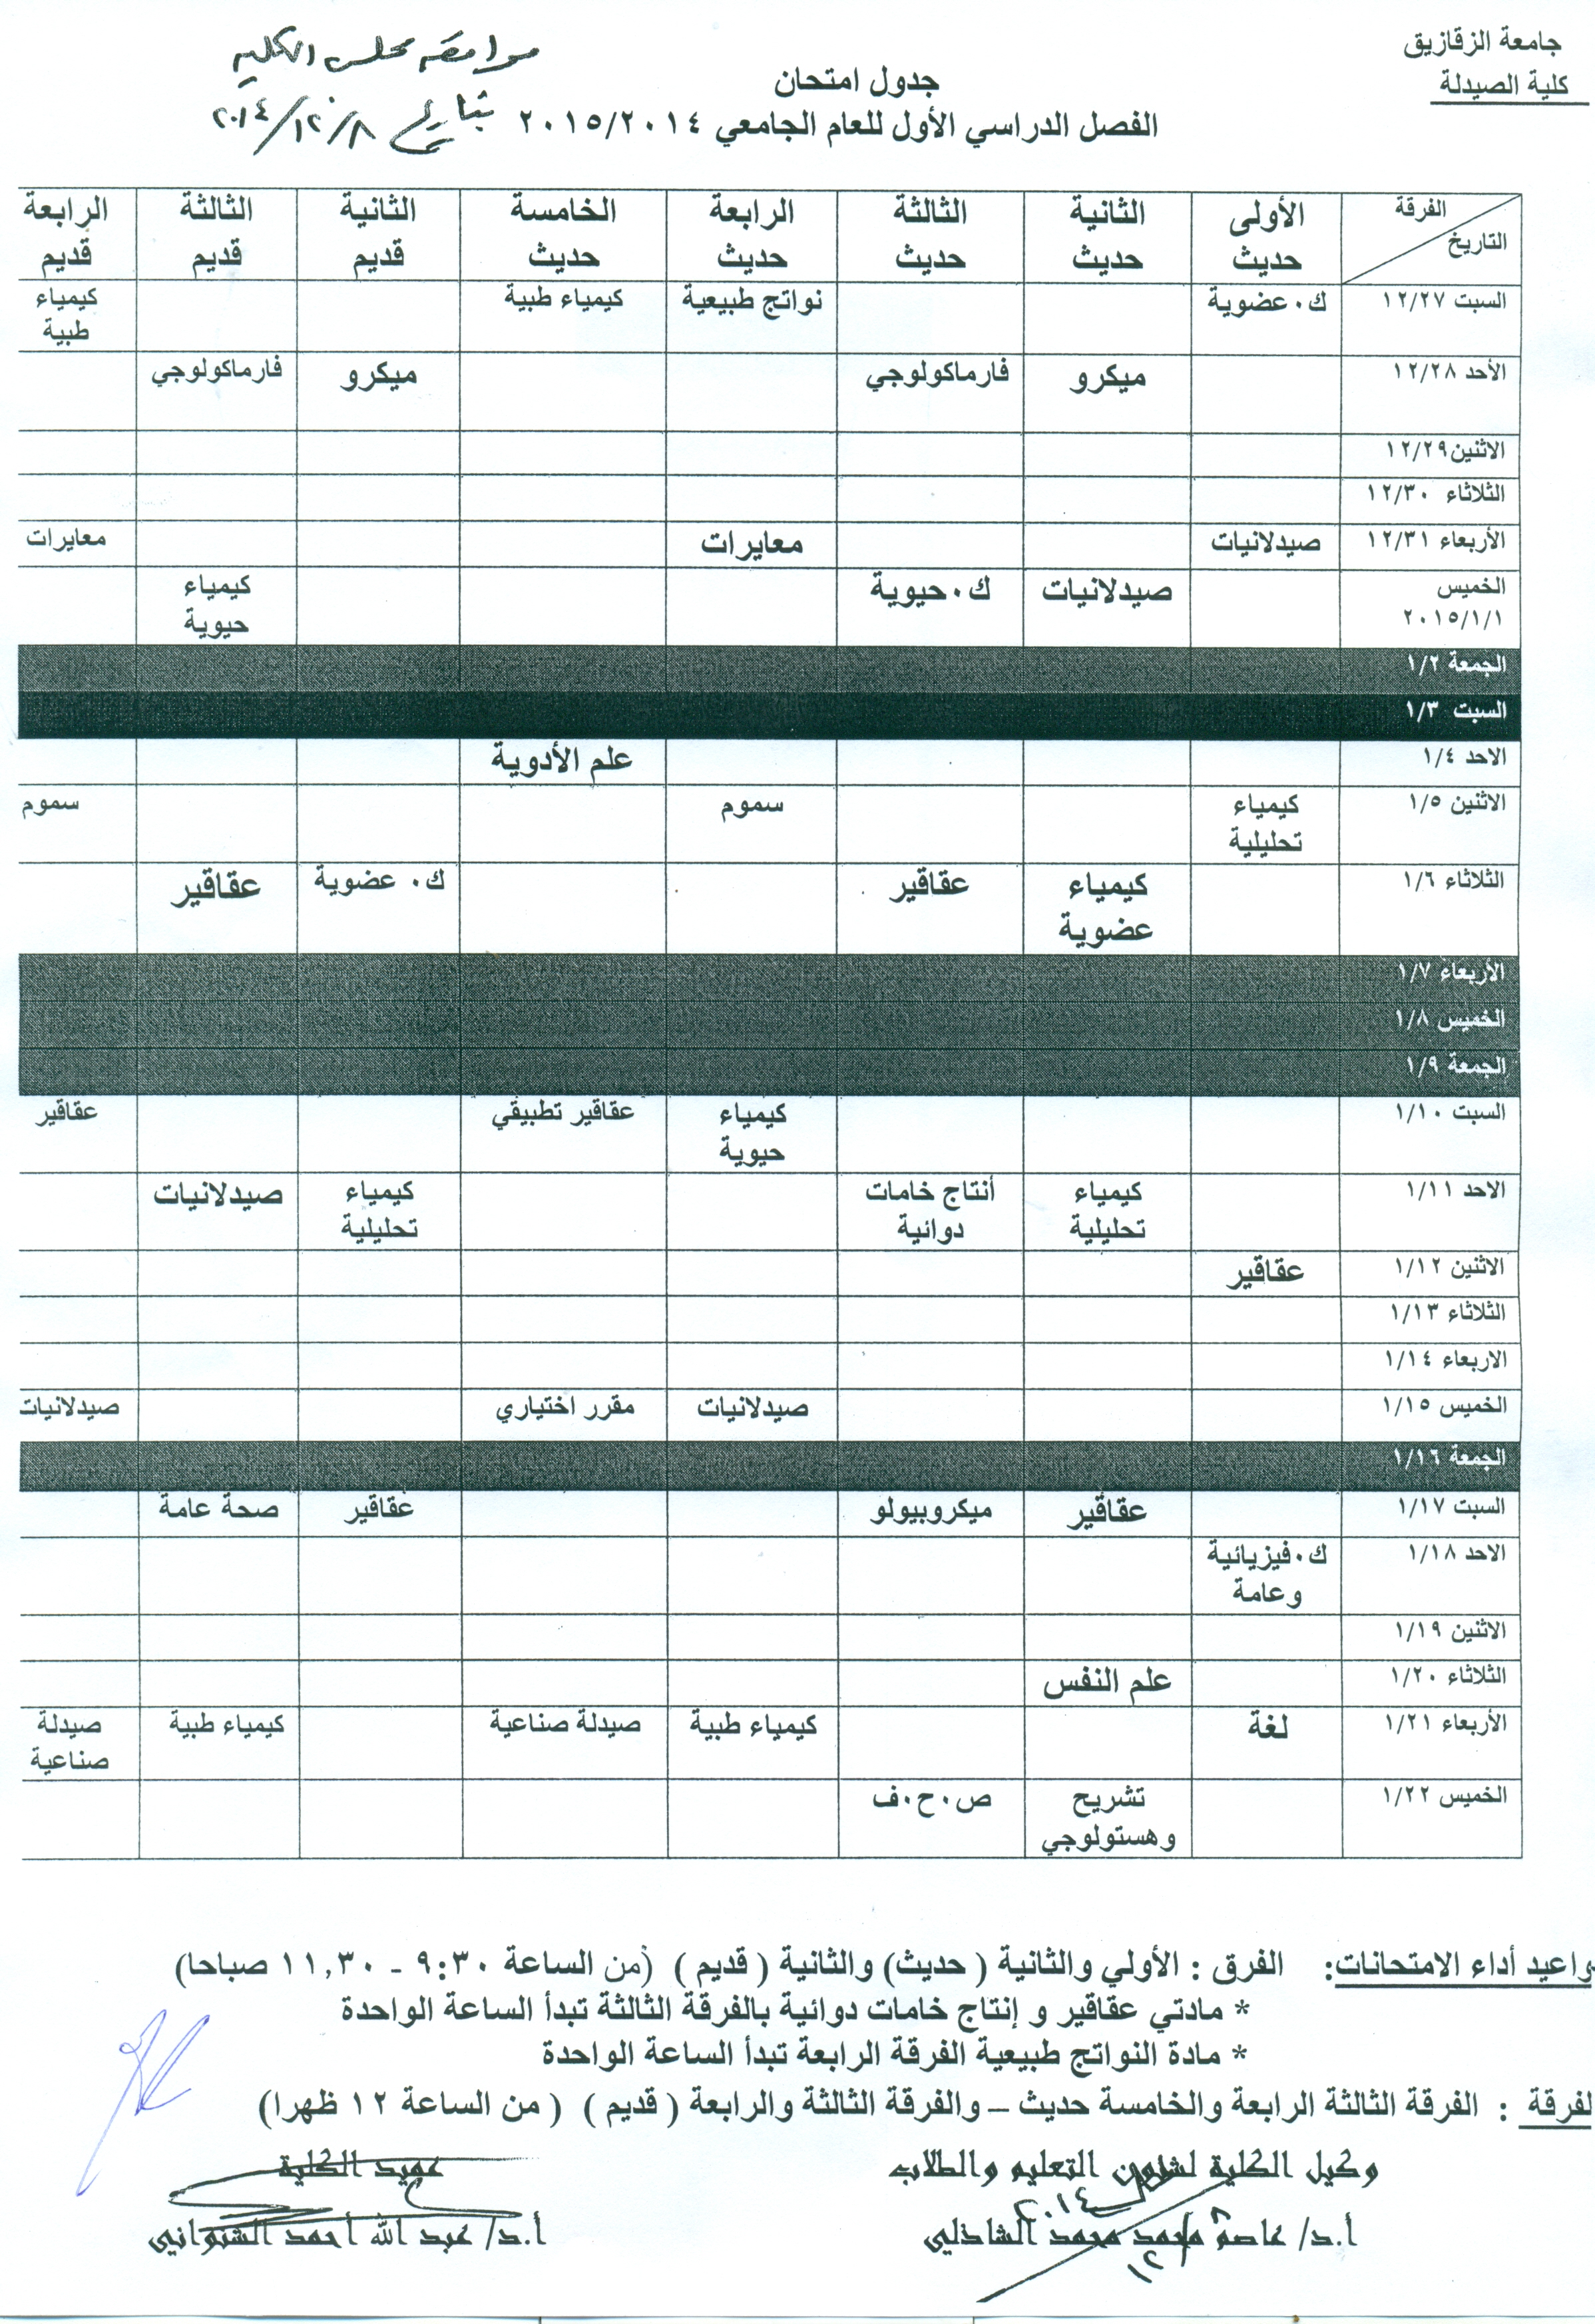 جدول إمتحانات جميع الفرق للفصل الدراسى الأول للعام الجامعى 2014/2015